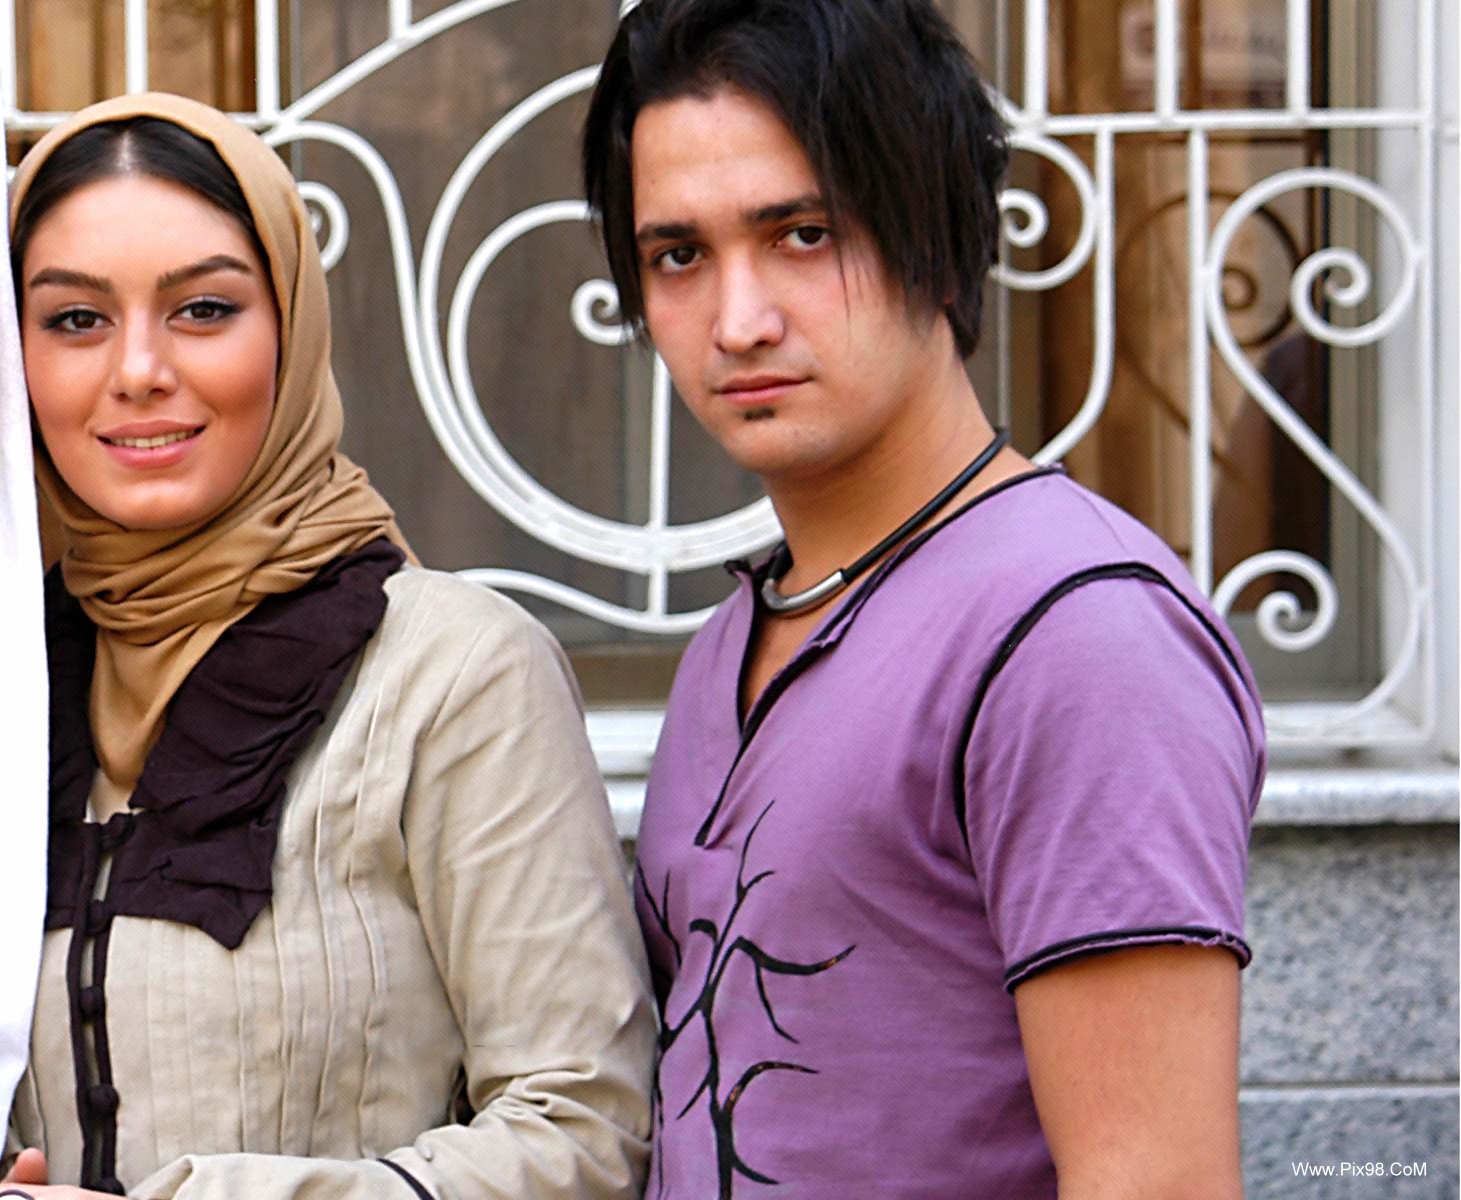 عکس های جدید از بازیگران ایرانی را به همراه همرانشان